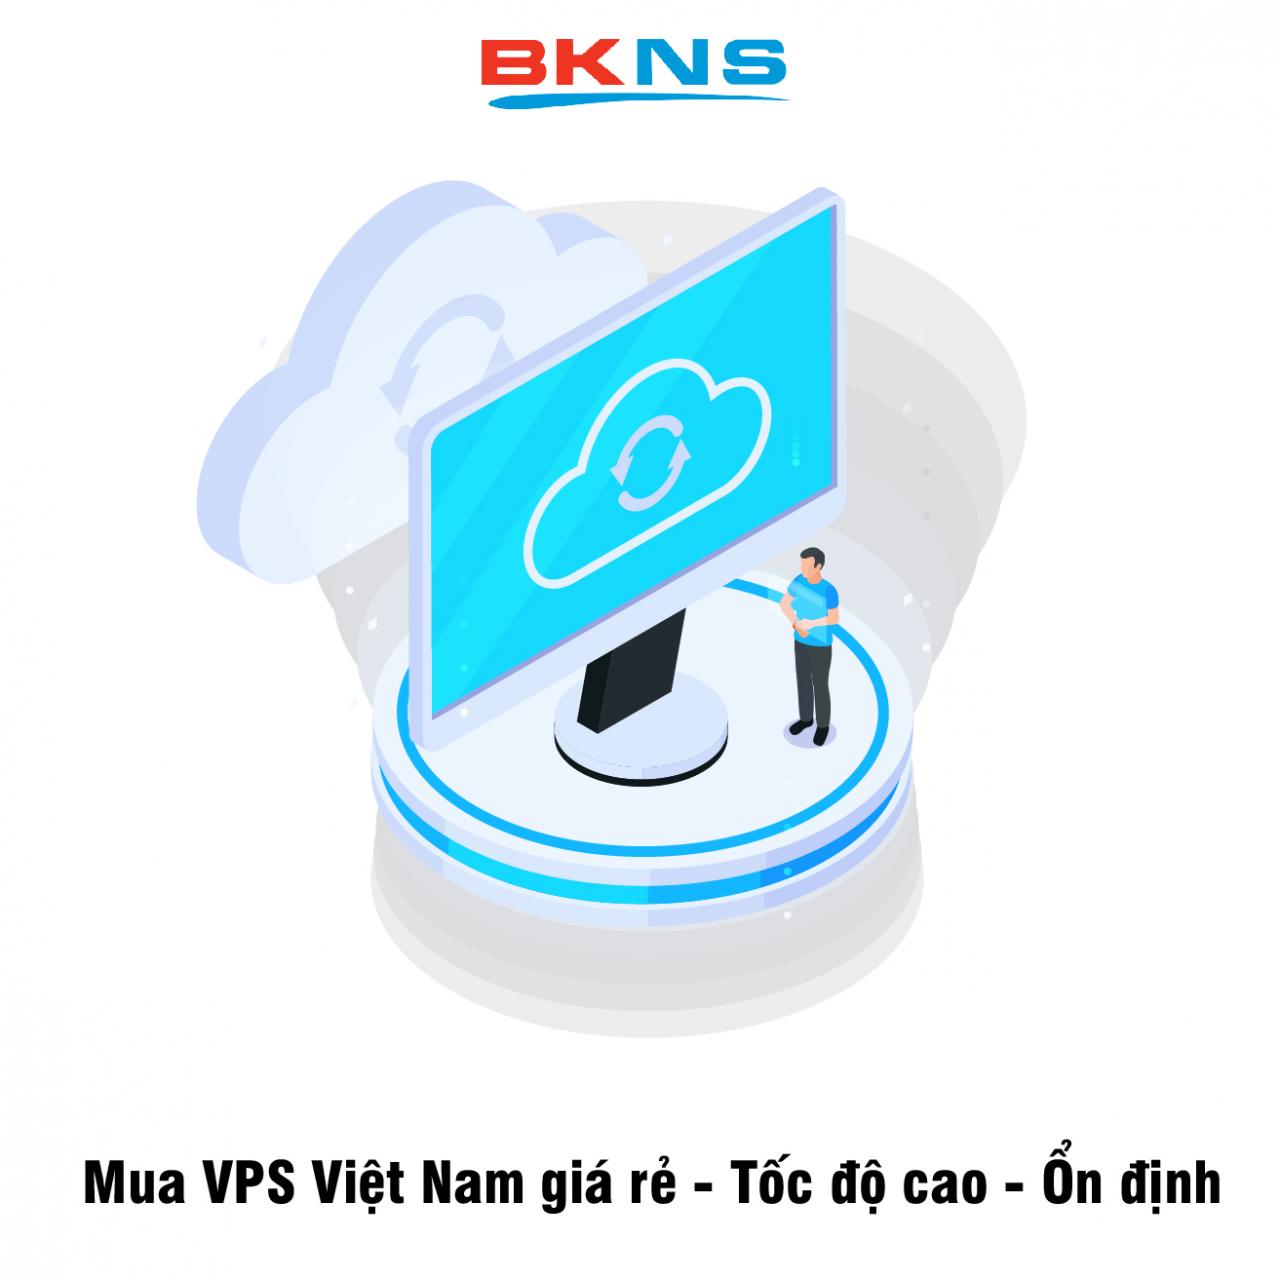 Mua VPS Việt Nam